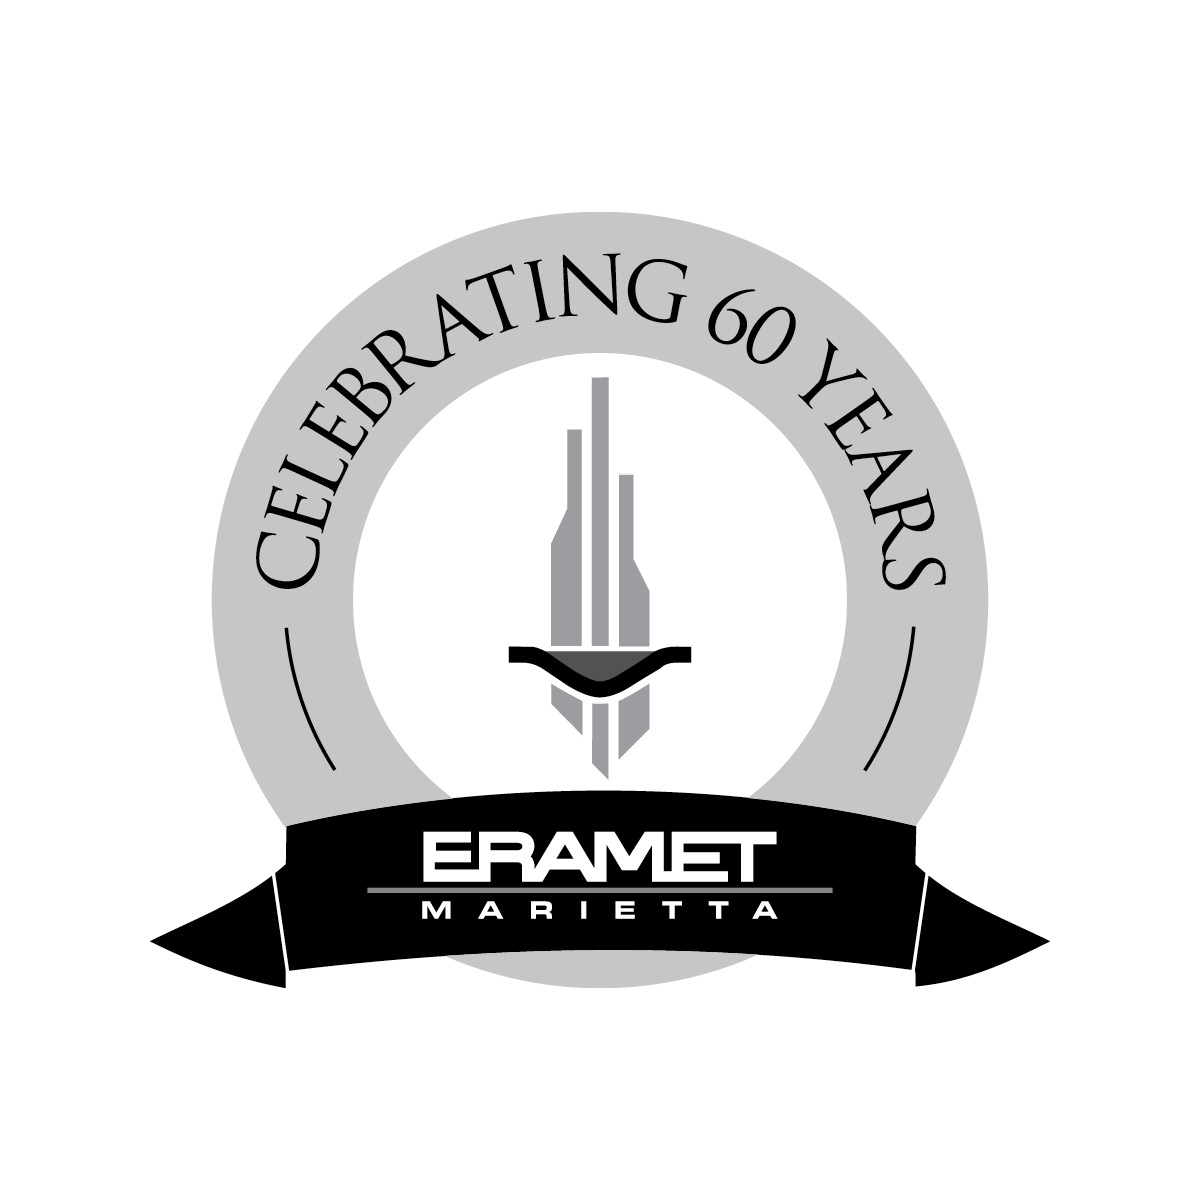 Eramet Marietta - Celebrating 60 Years